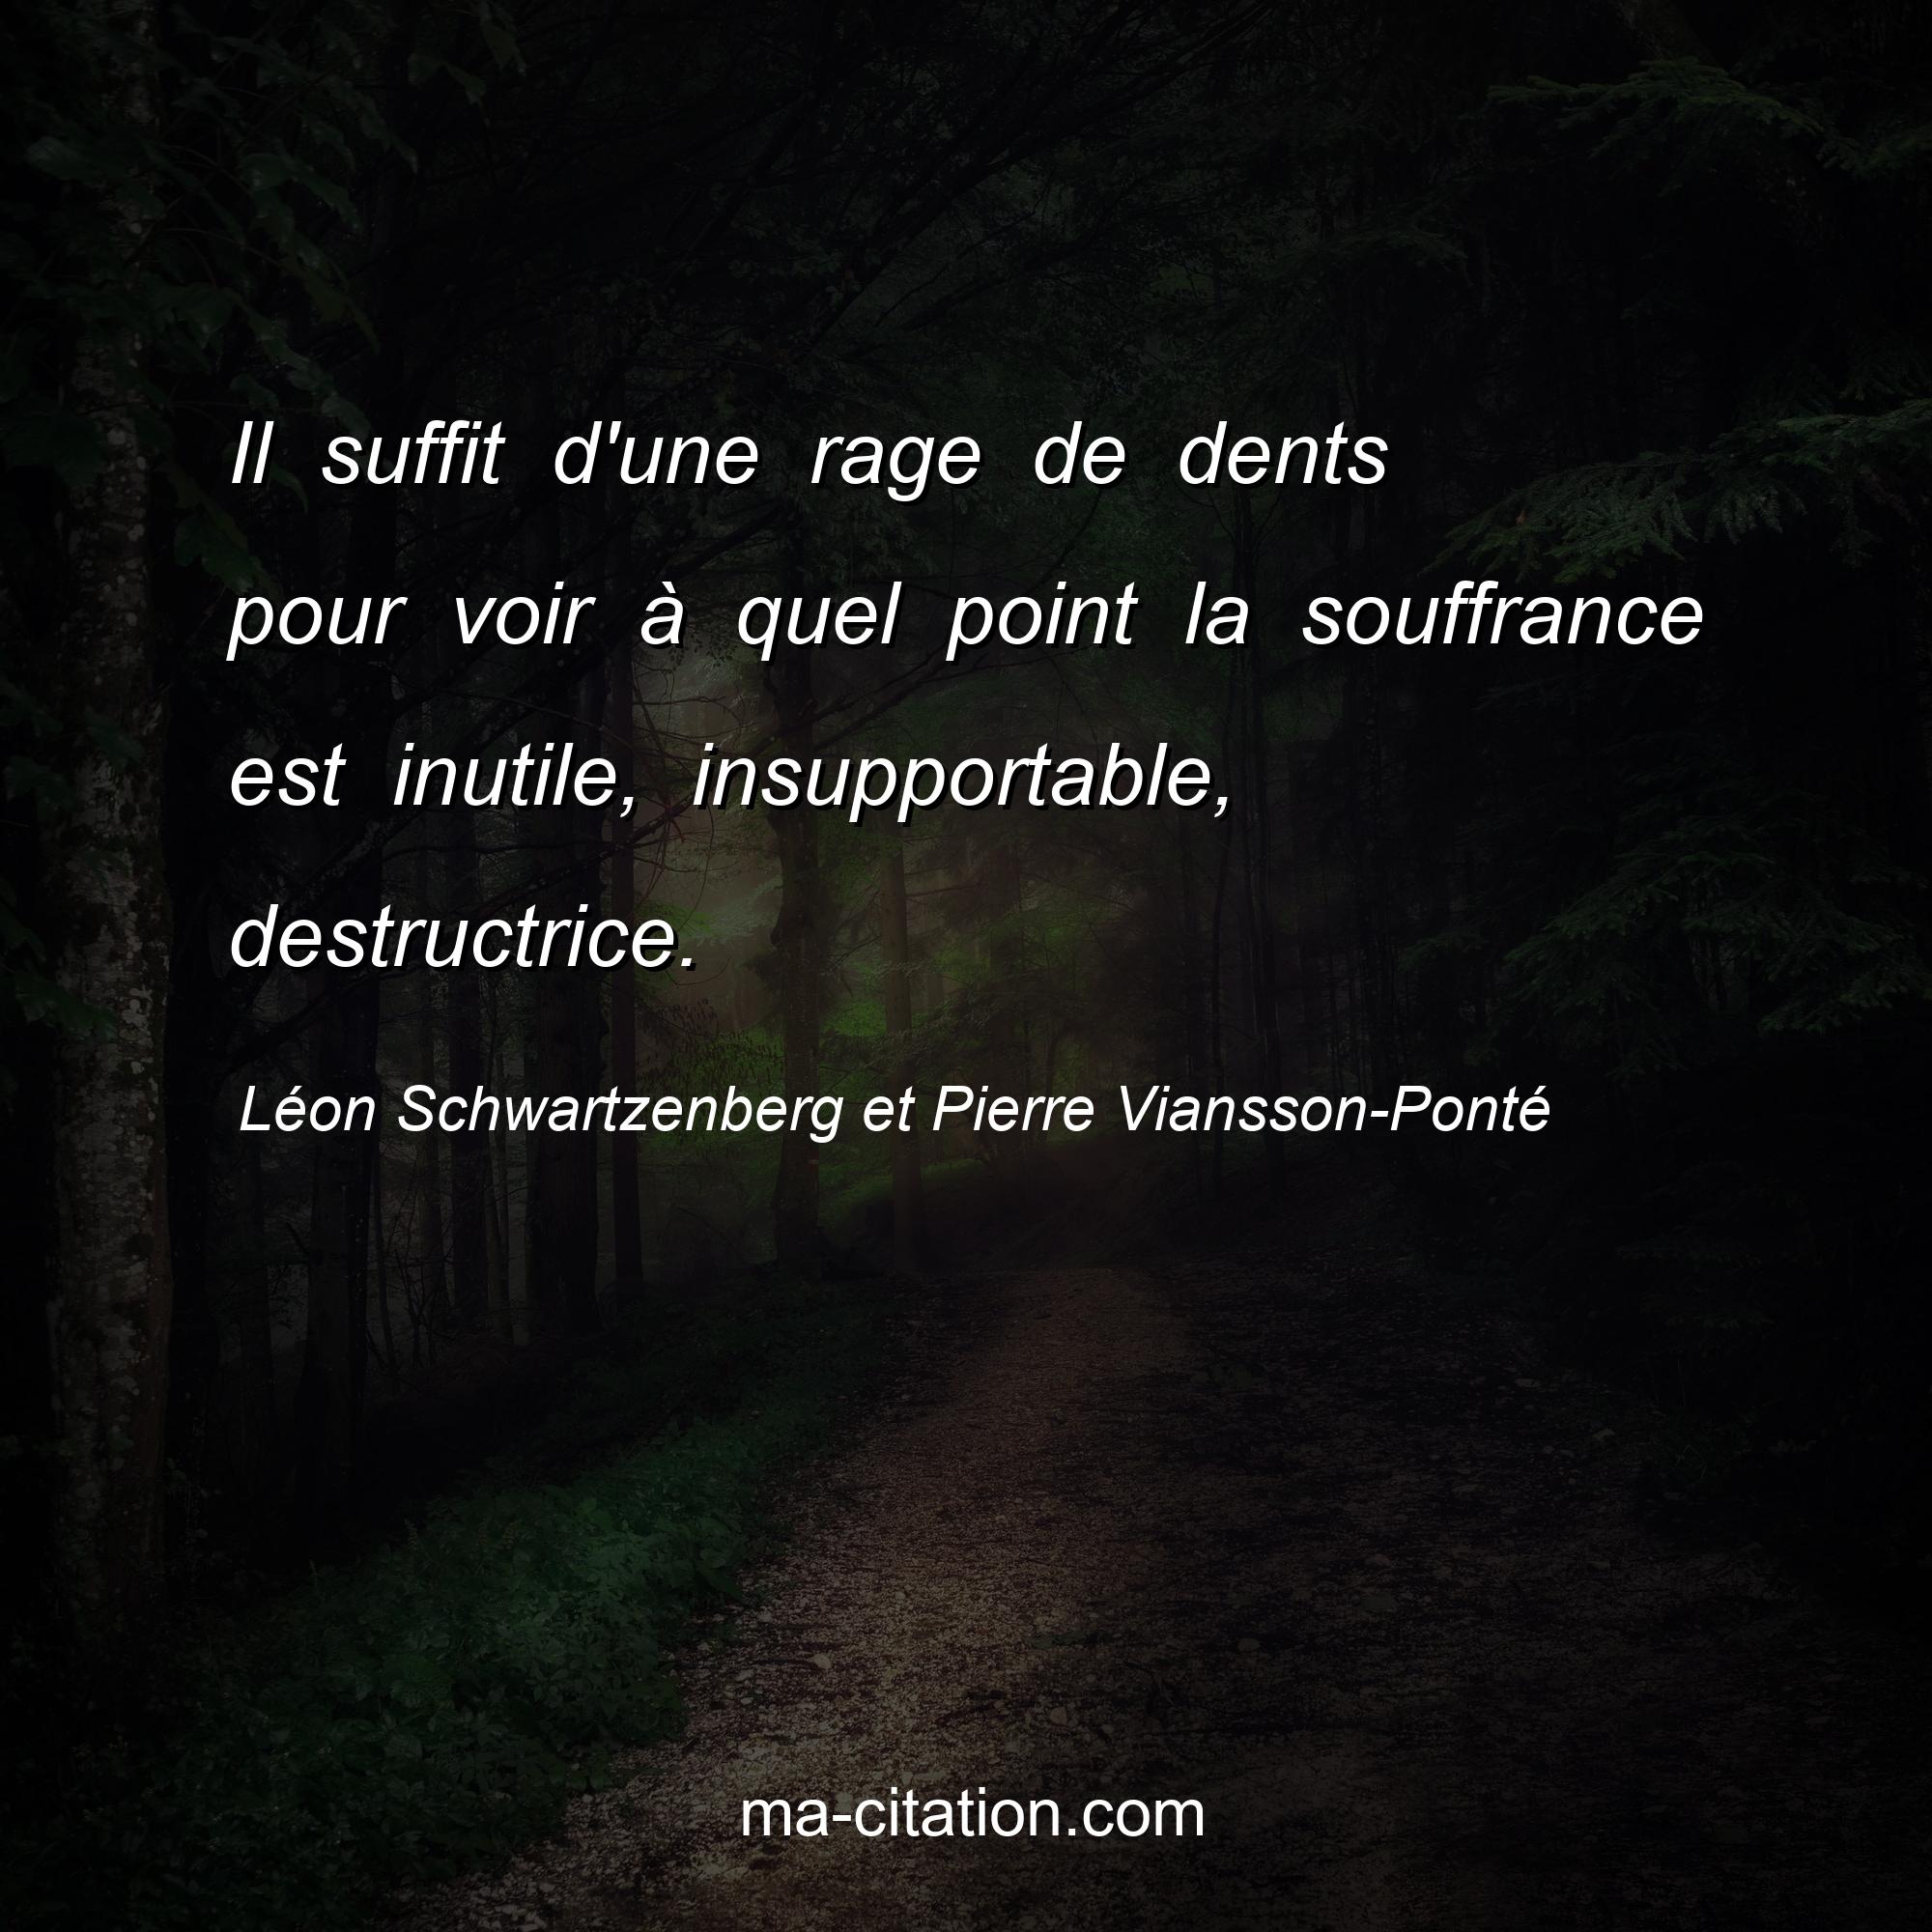 Léon Schwartzenberg et Pierre Viansson-Ponté : Il suffit d'une rage de dents pour voir à quel point la souffrance est inutile, insupportable, destructrice.